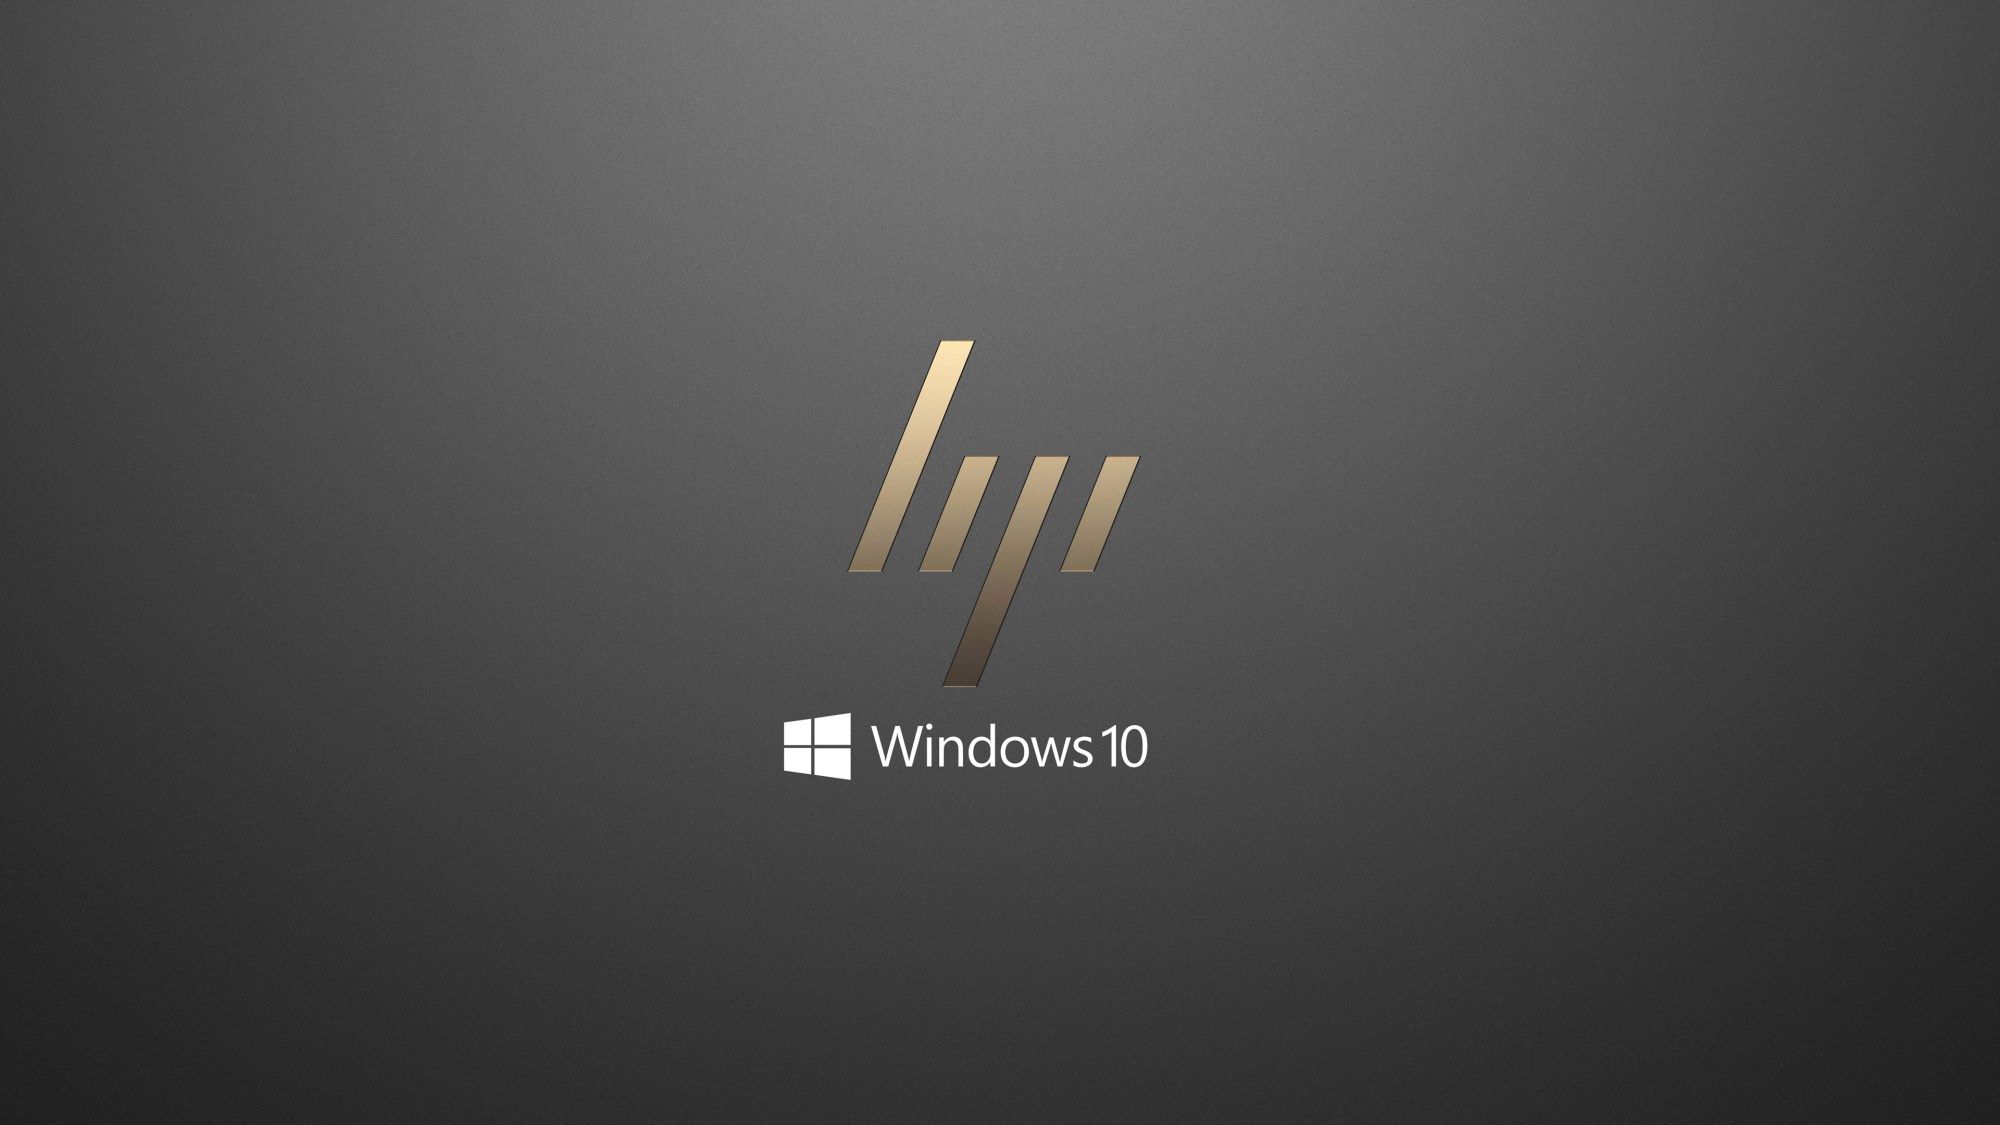 Windows 10 OEM Wallpaper for HP Laptops